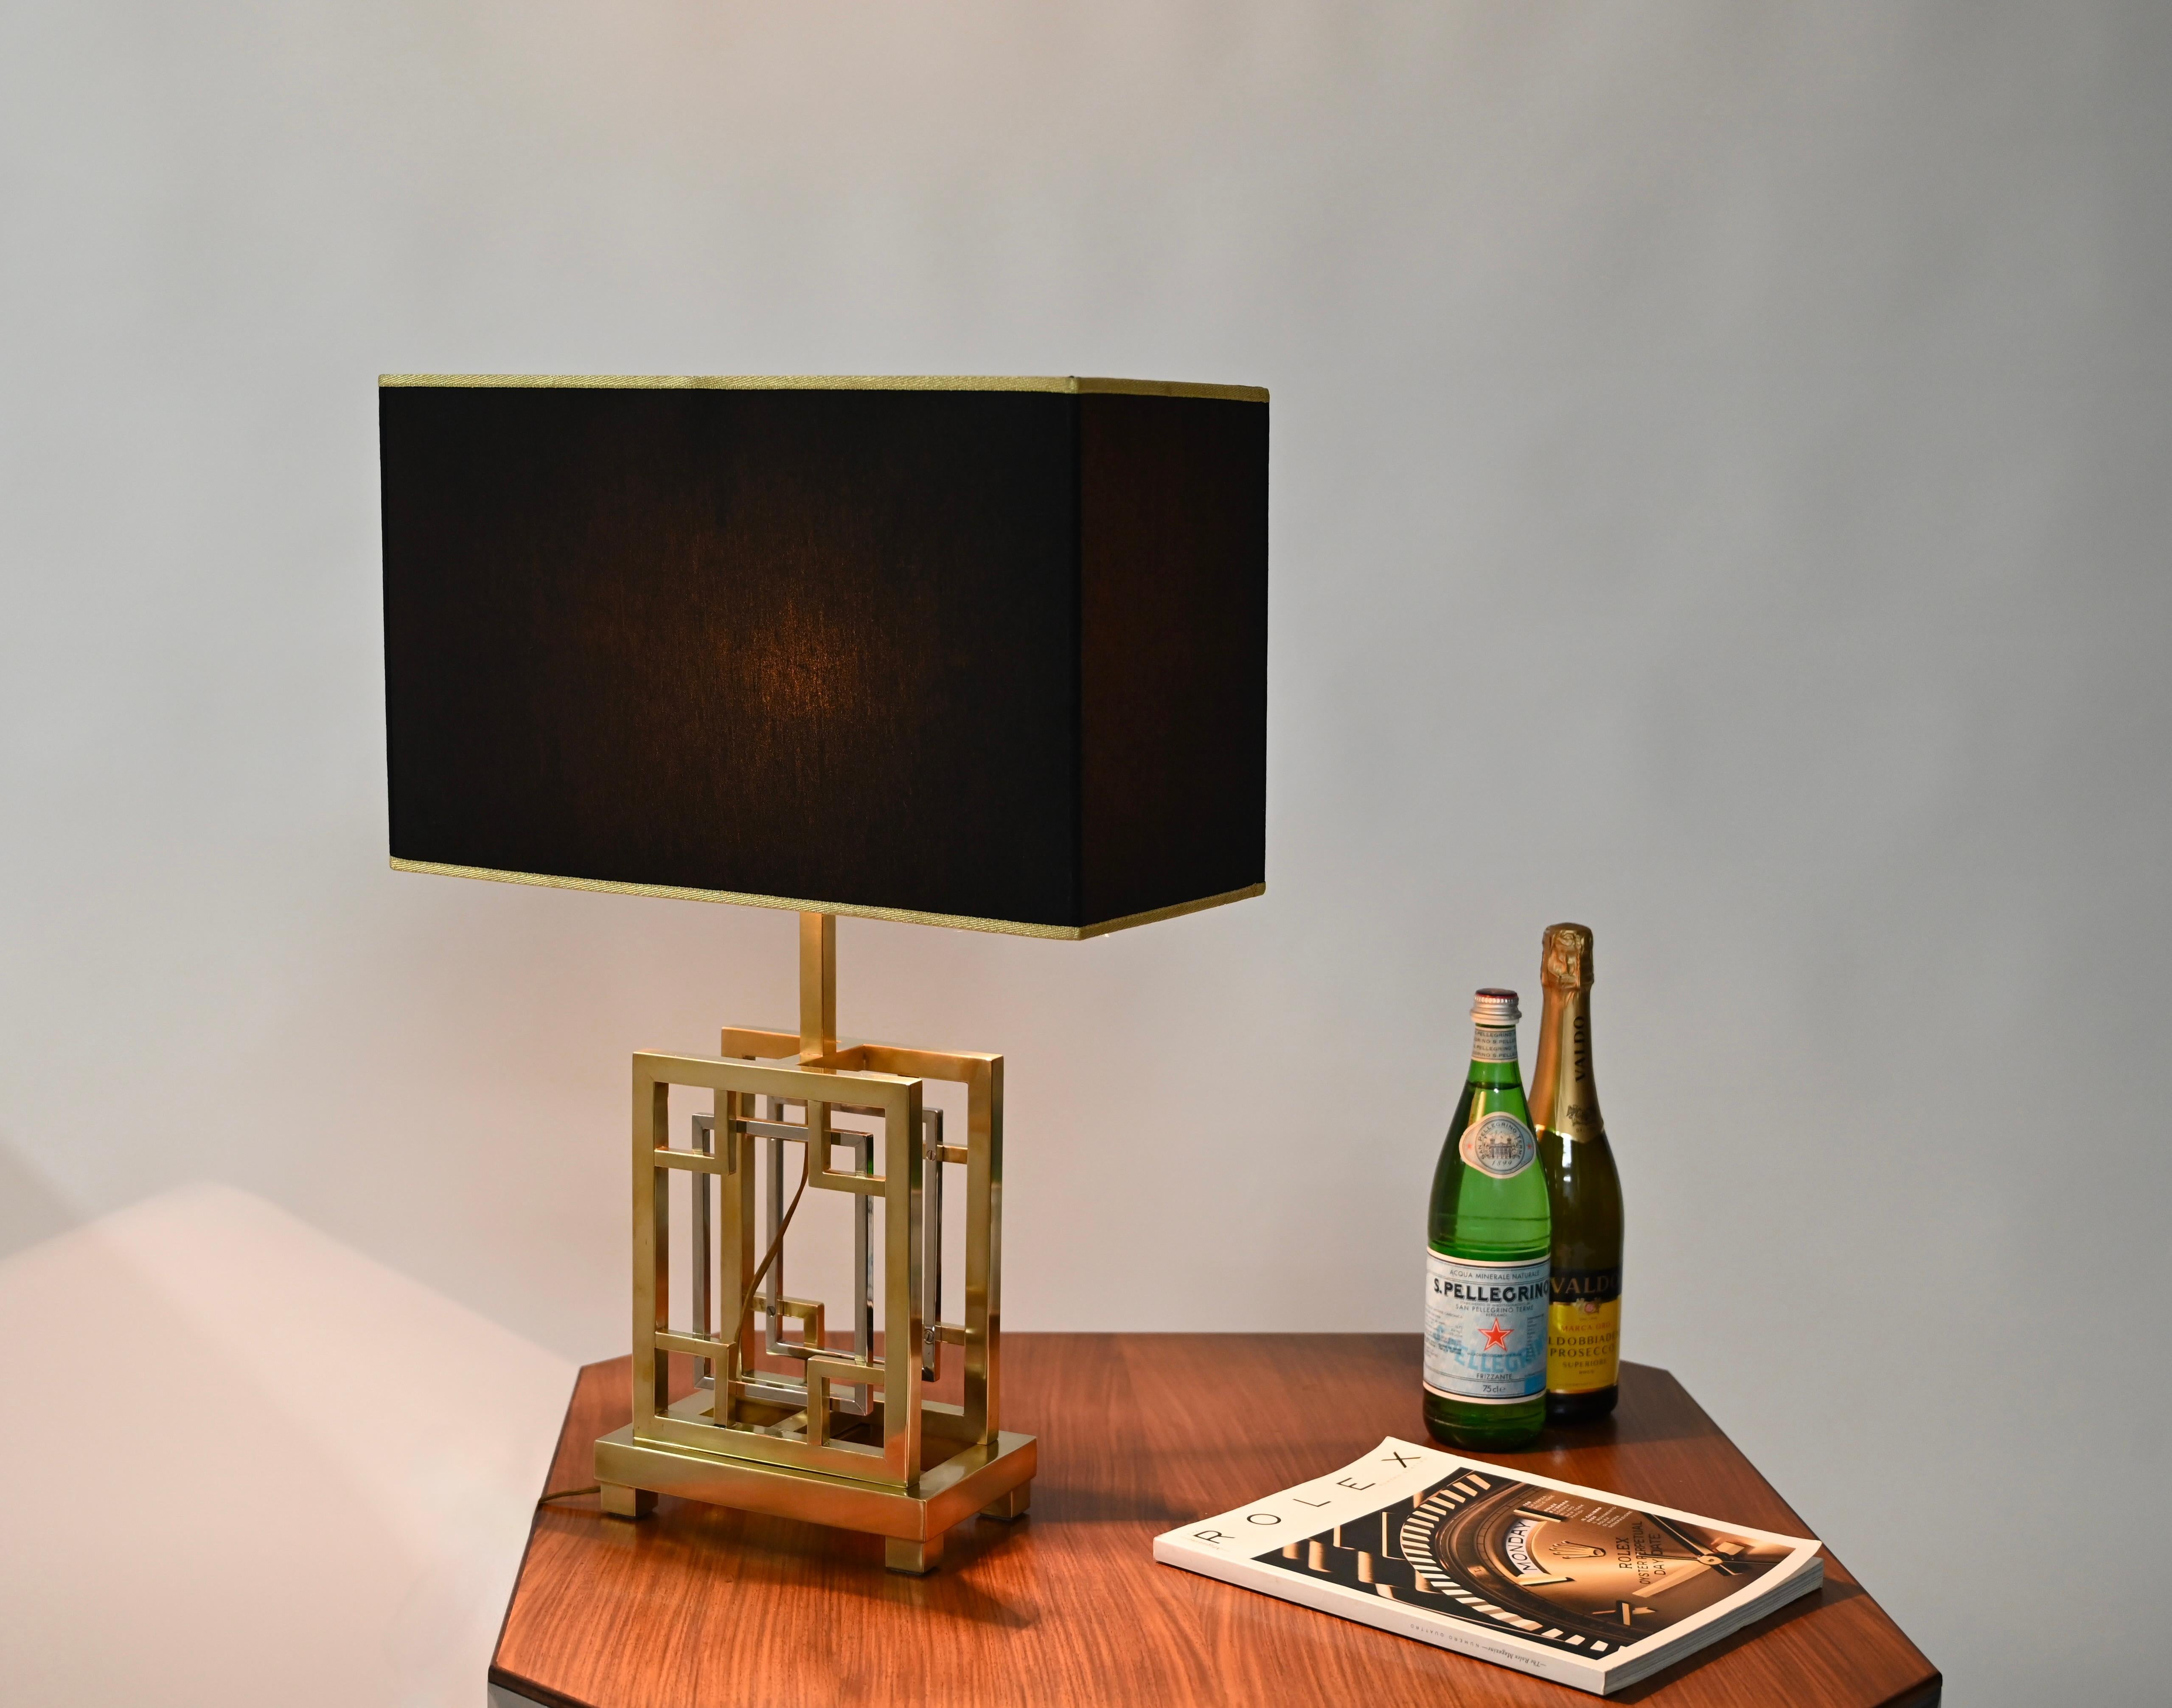 Wunderschöne Tischlampe aus Messing und Chrom mit schwarz-goldenem Lampenschirm. Dieses schöne Stück wurde in Italien im Stil von Willy Rizzo entworfen. 

Diese wunderschöne Tischleuchte ist komplett aus einer geometrischen Kombination aus Messing